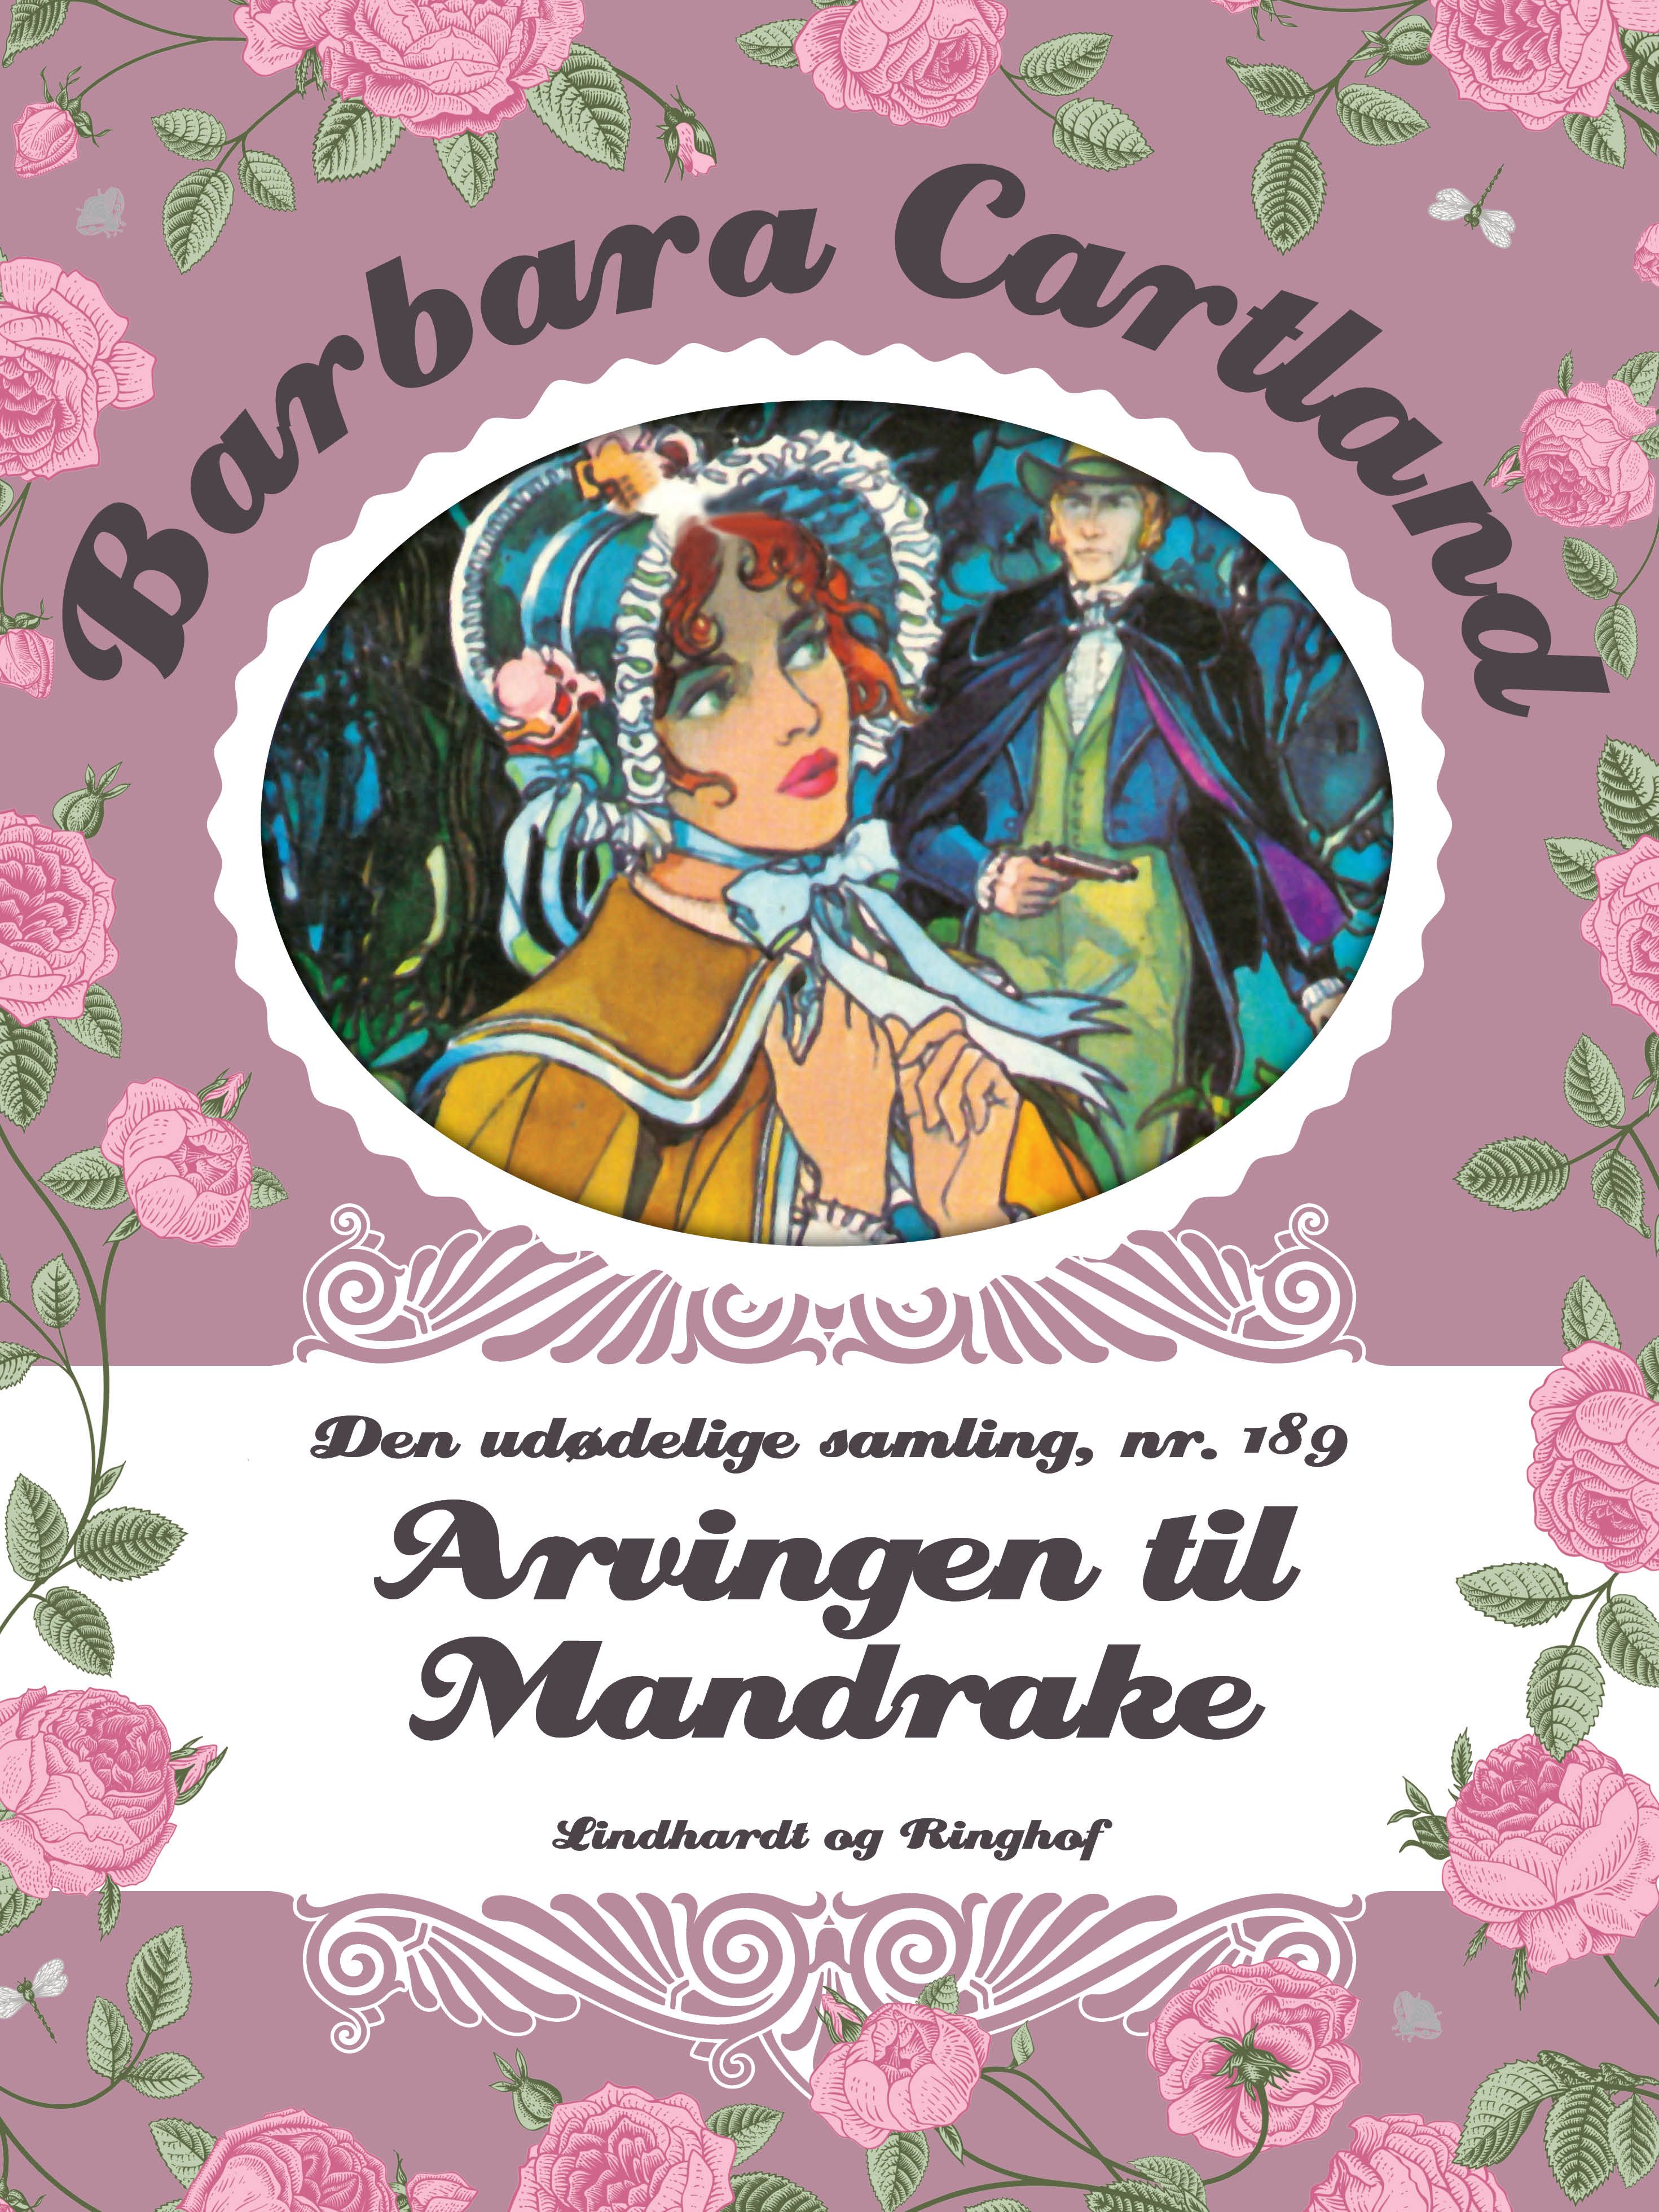 Arvingen til Mandrake, e-bog af Barbara Cartland